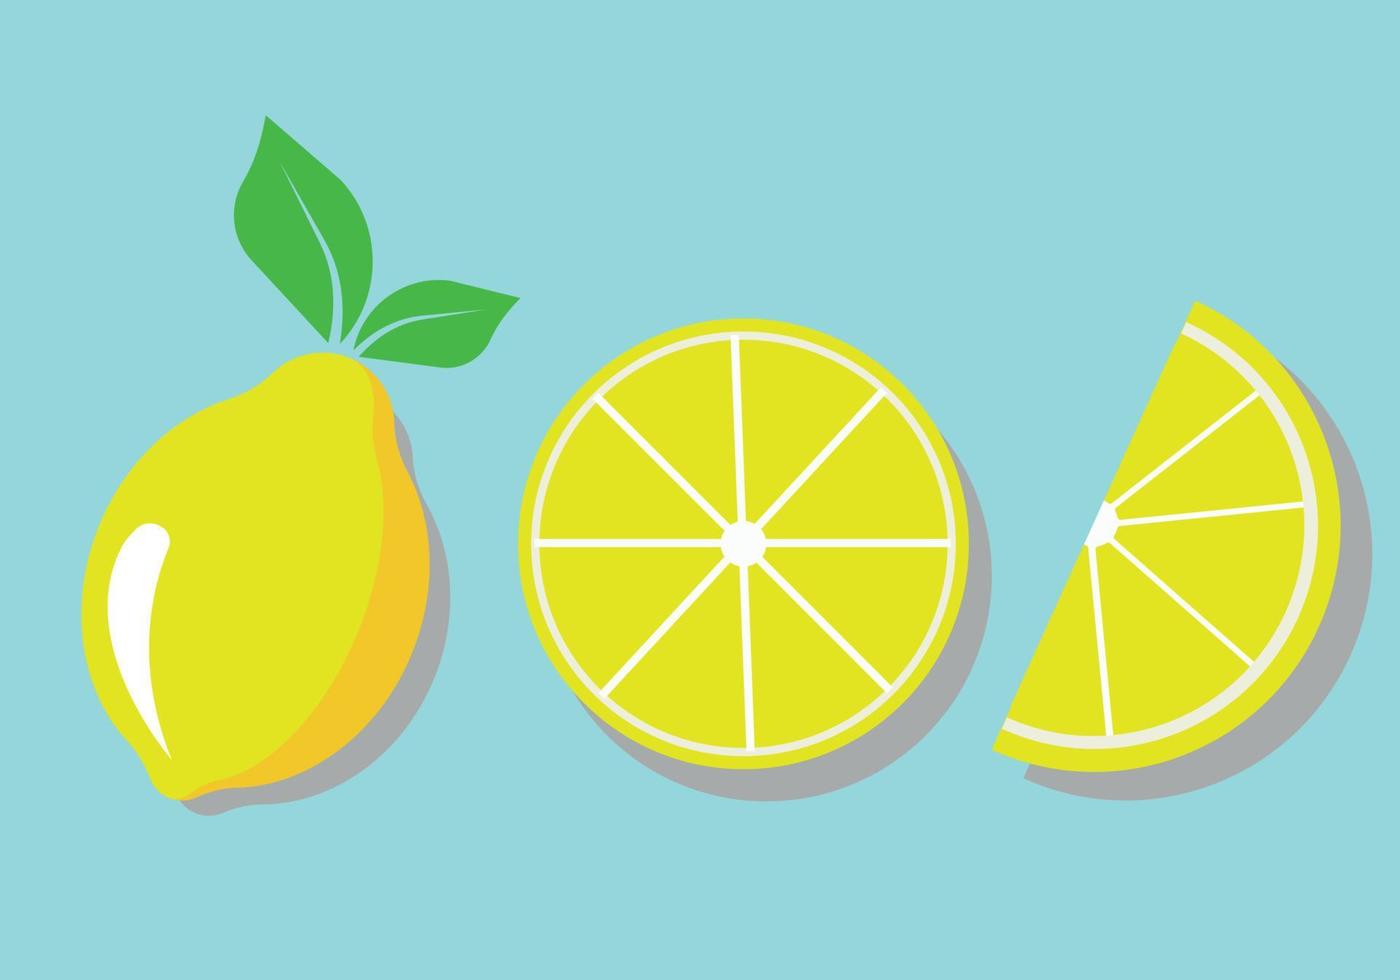 abstrato com três fatias de limão sobre um fundo azul. vetor com plantas cítricas